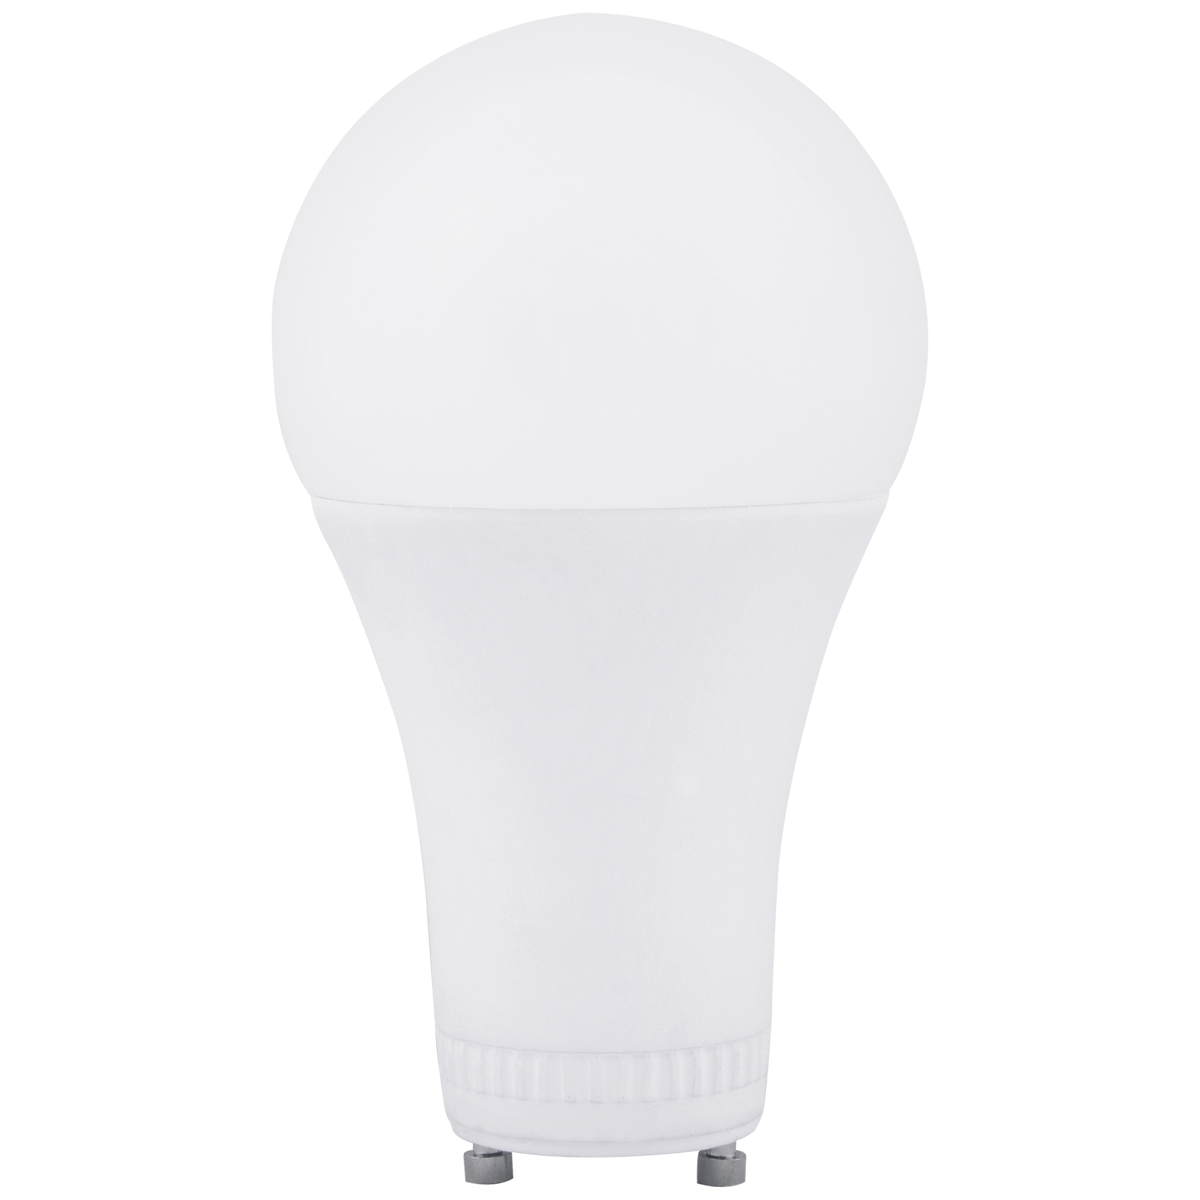 24 Pack LED Bulb with GU24 Base, 1,100 Lumens, 11W, 120V, 2700K, 3000K, or 4000K CCT